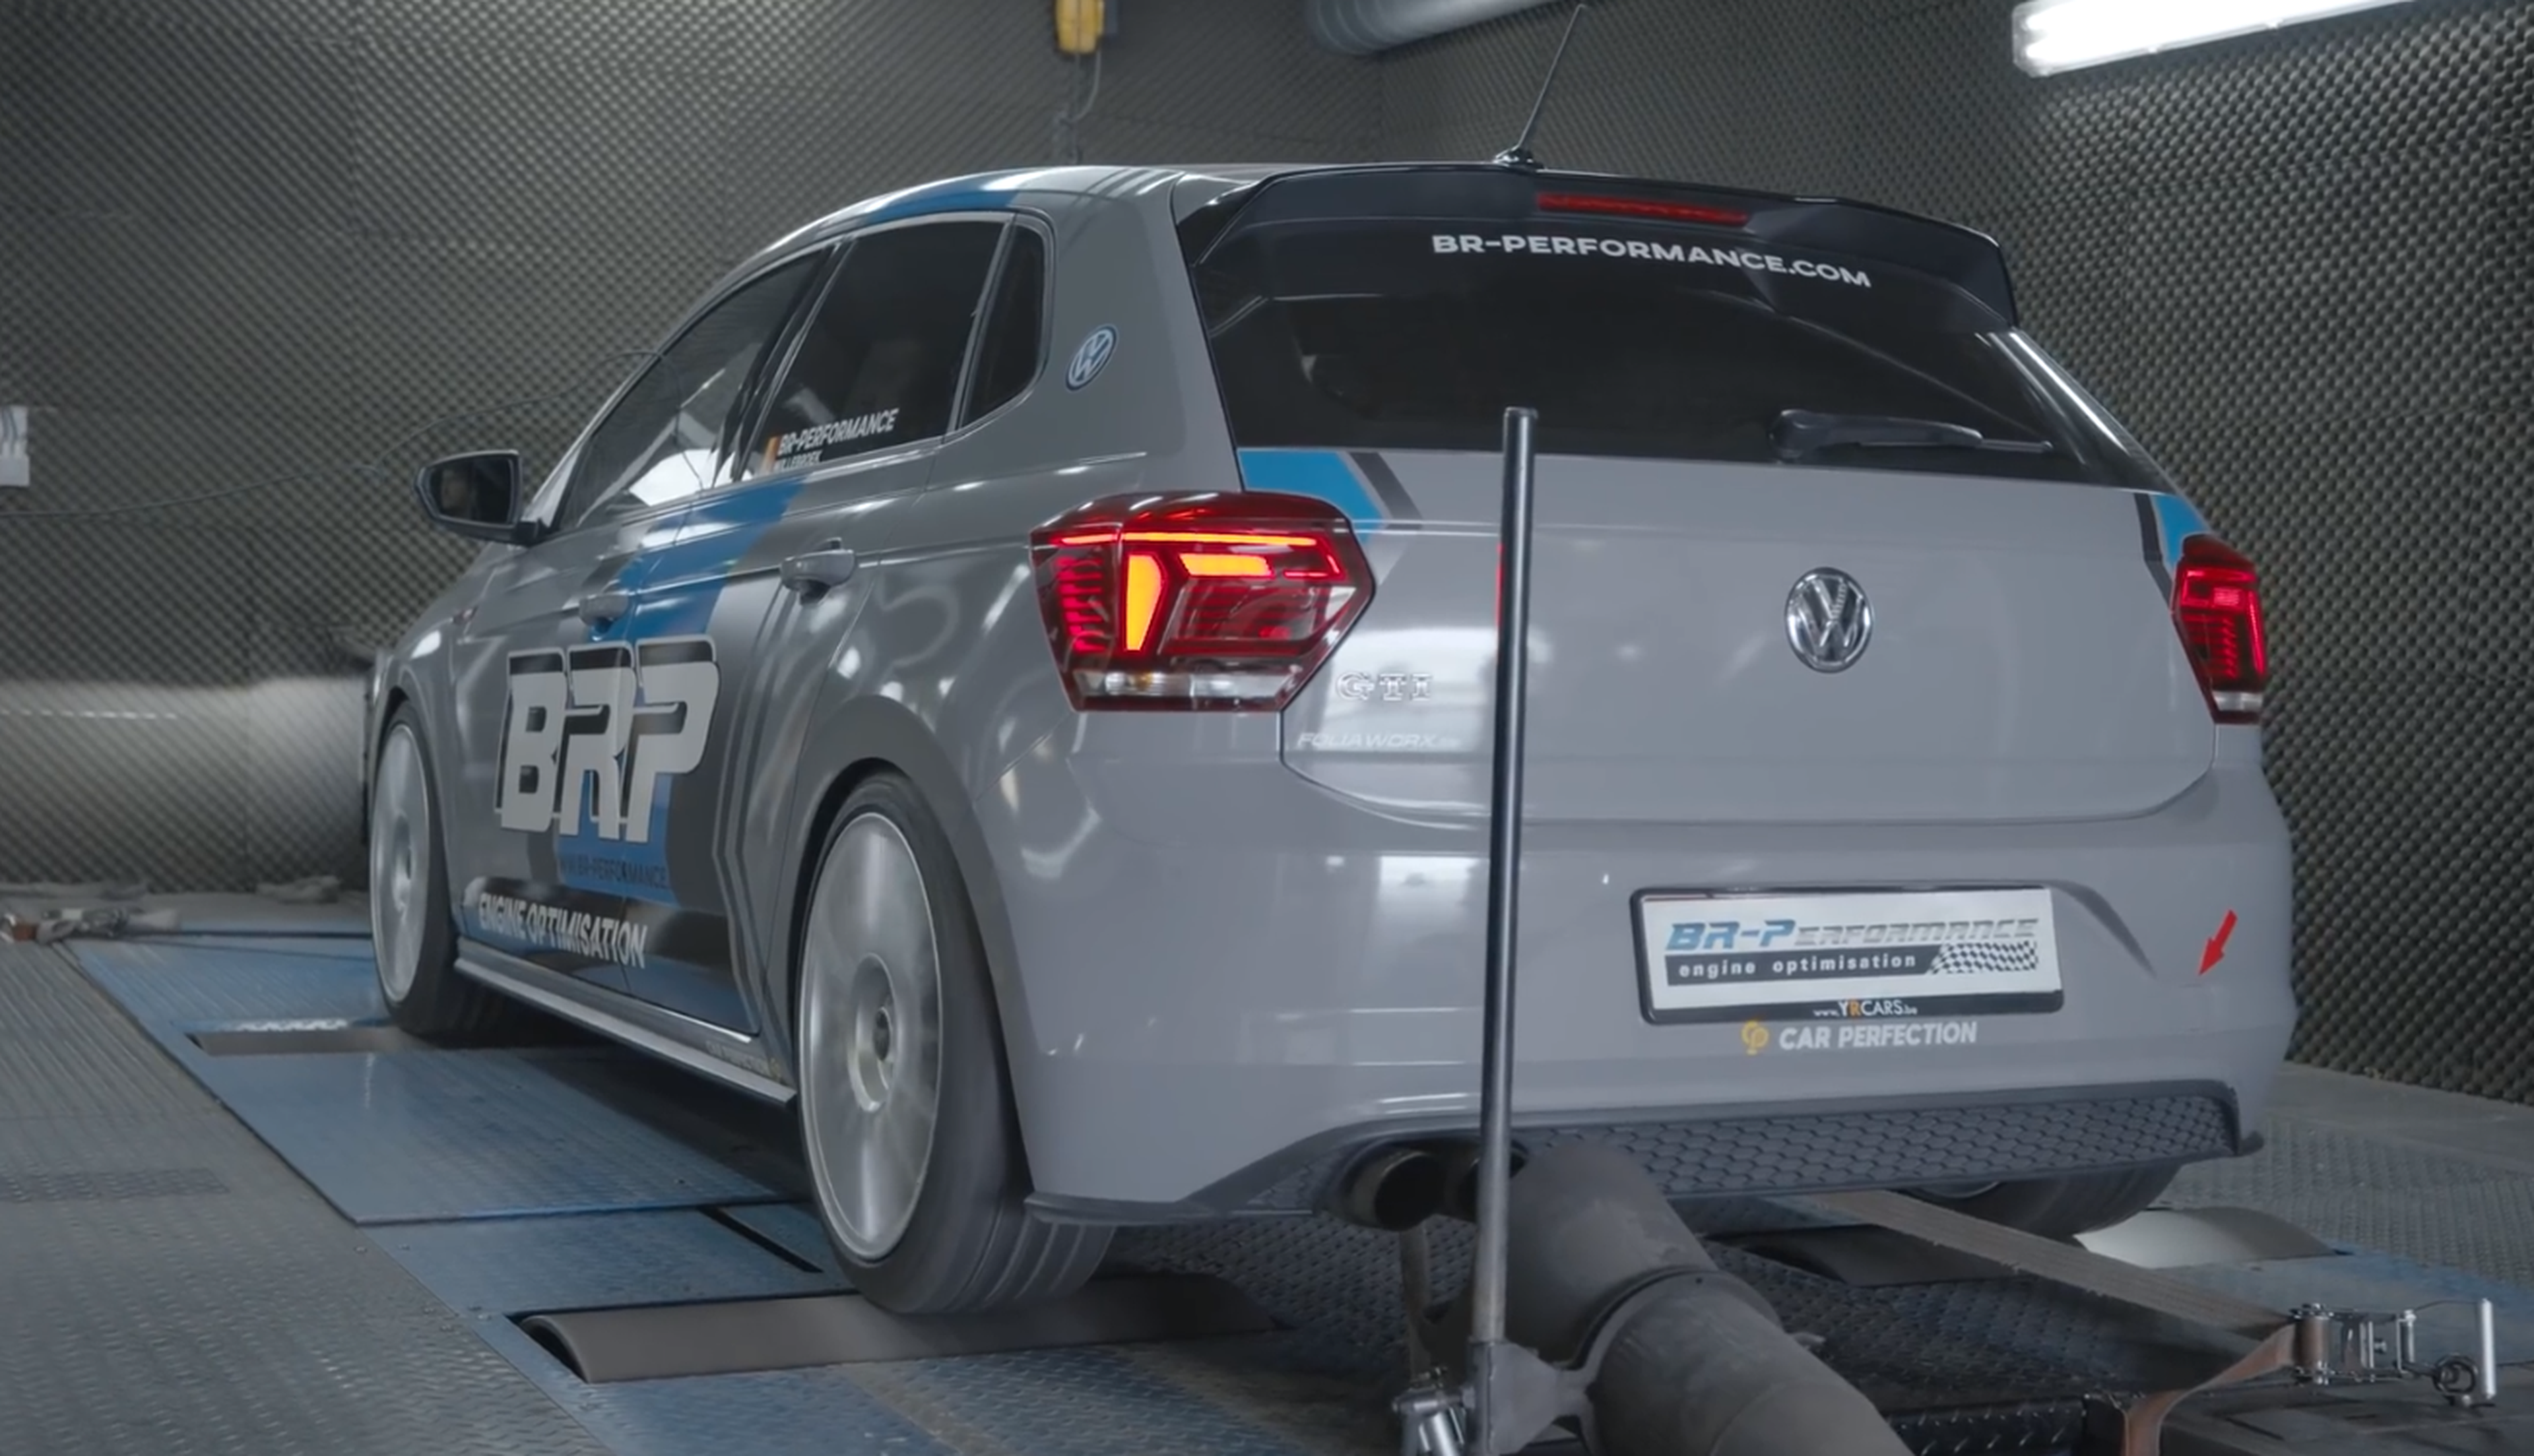 VW Polo GTI preparado por BR-Performance